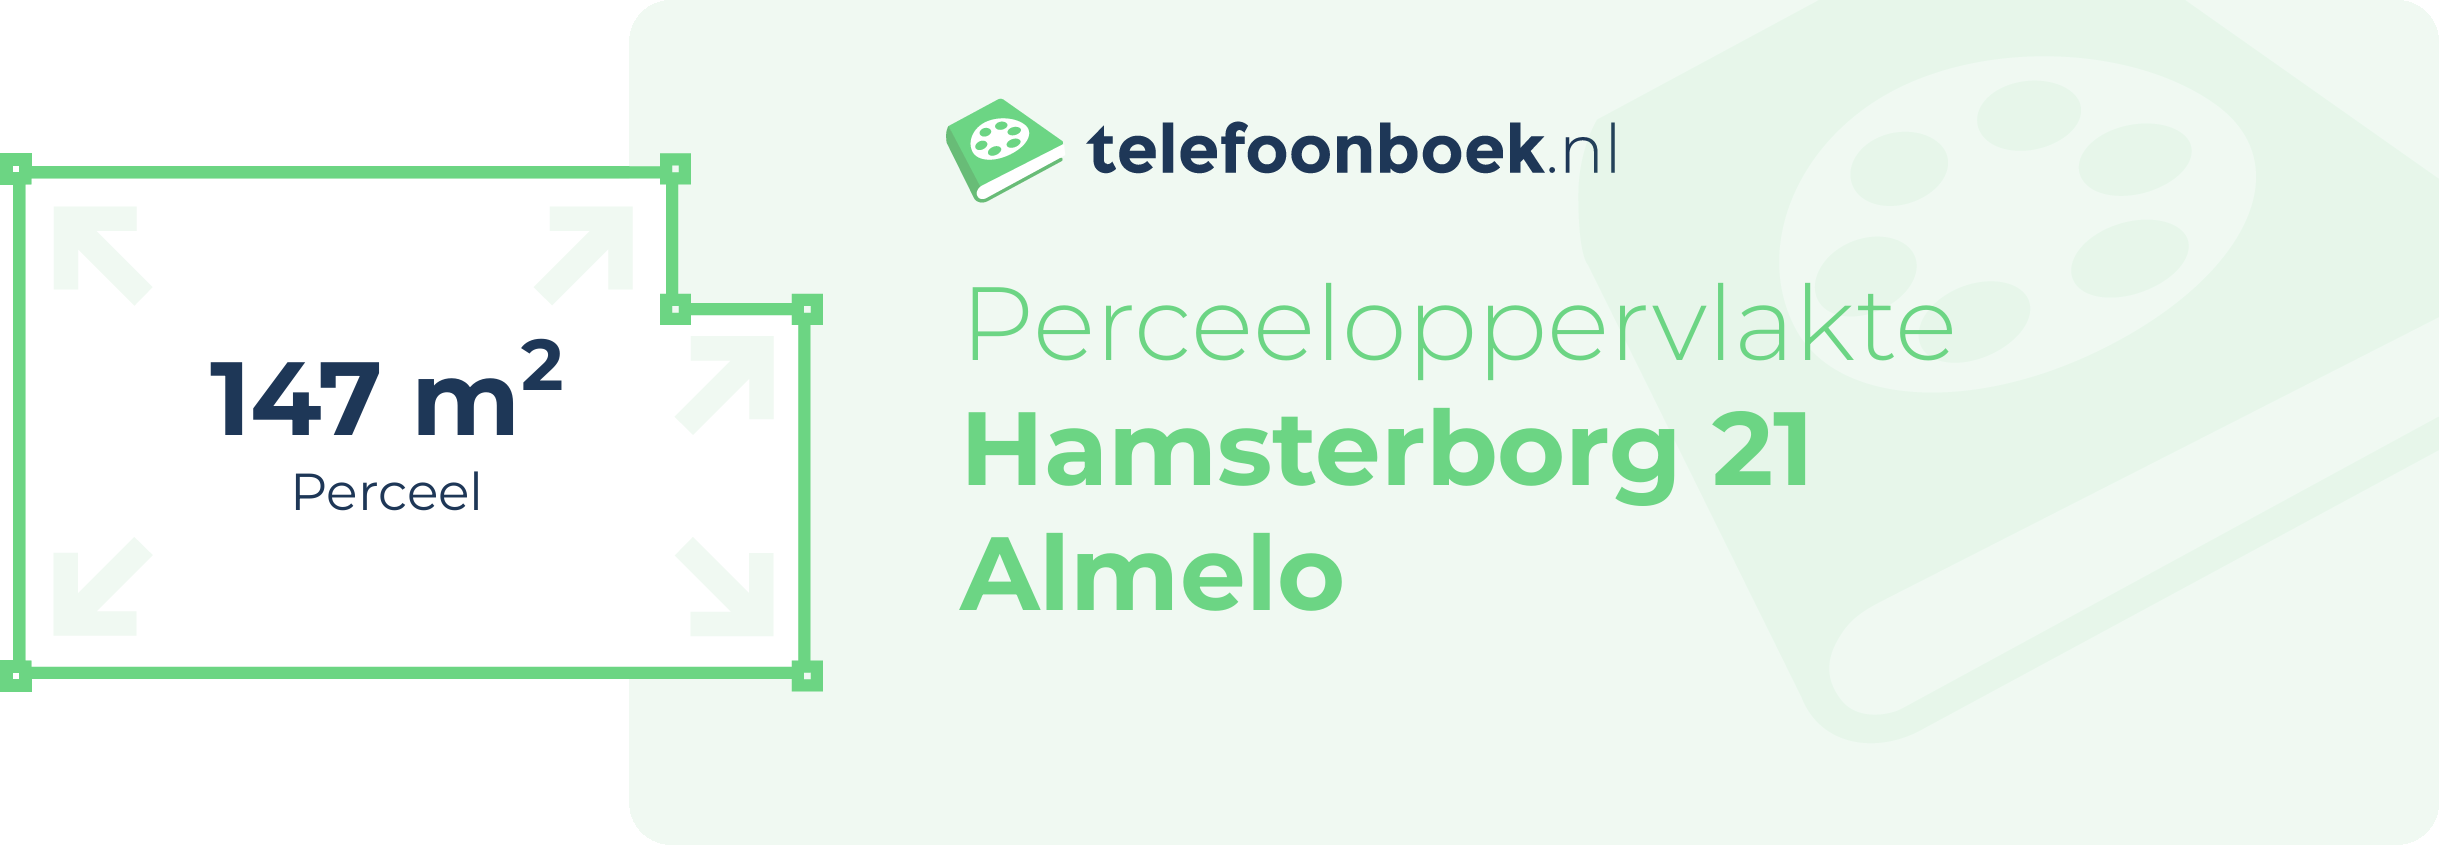 Perceeloppervlakte Hamsterborg 21 Almelo